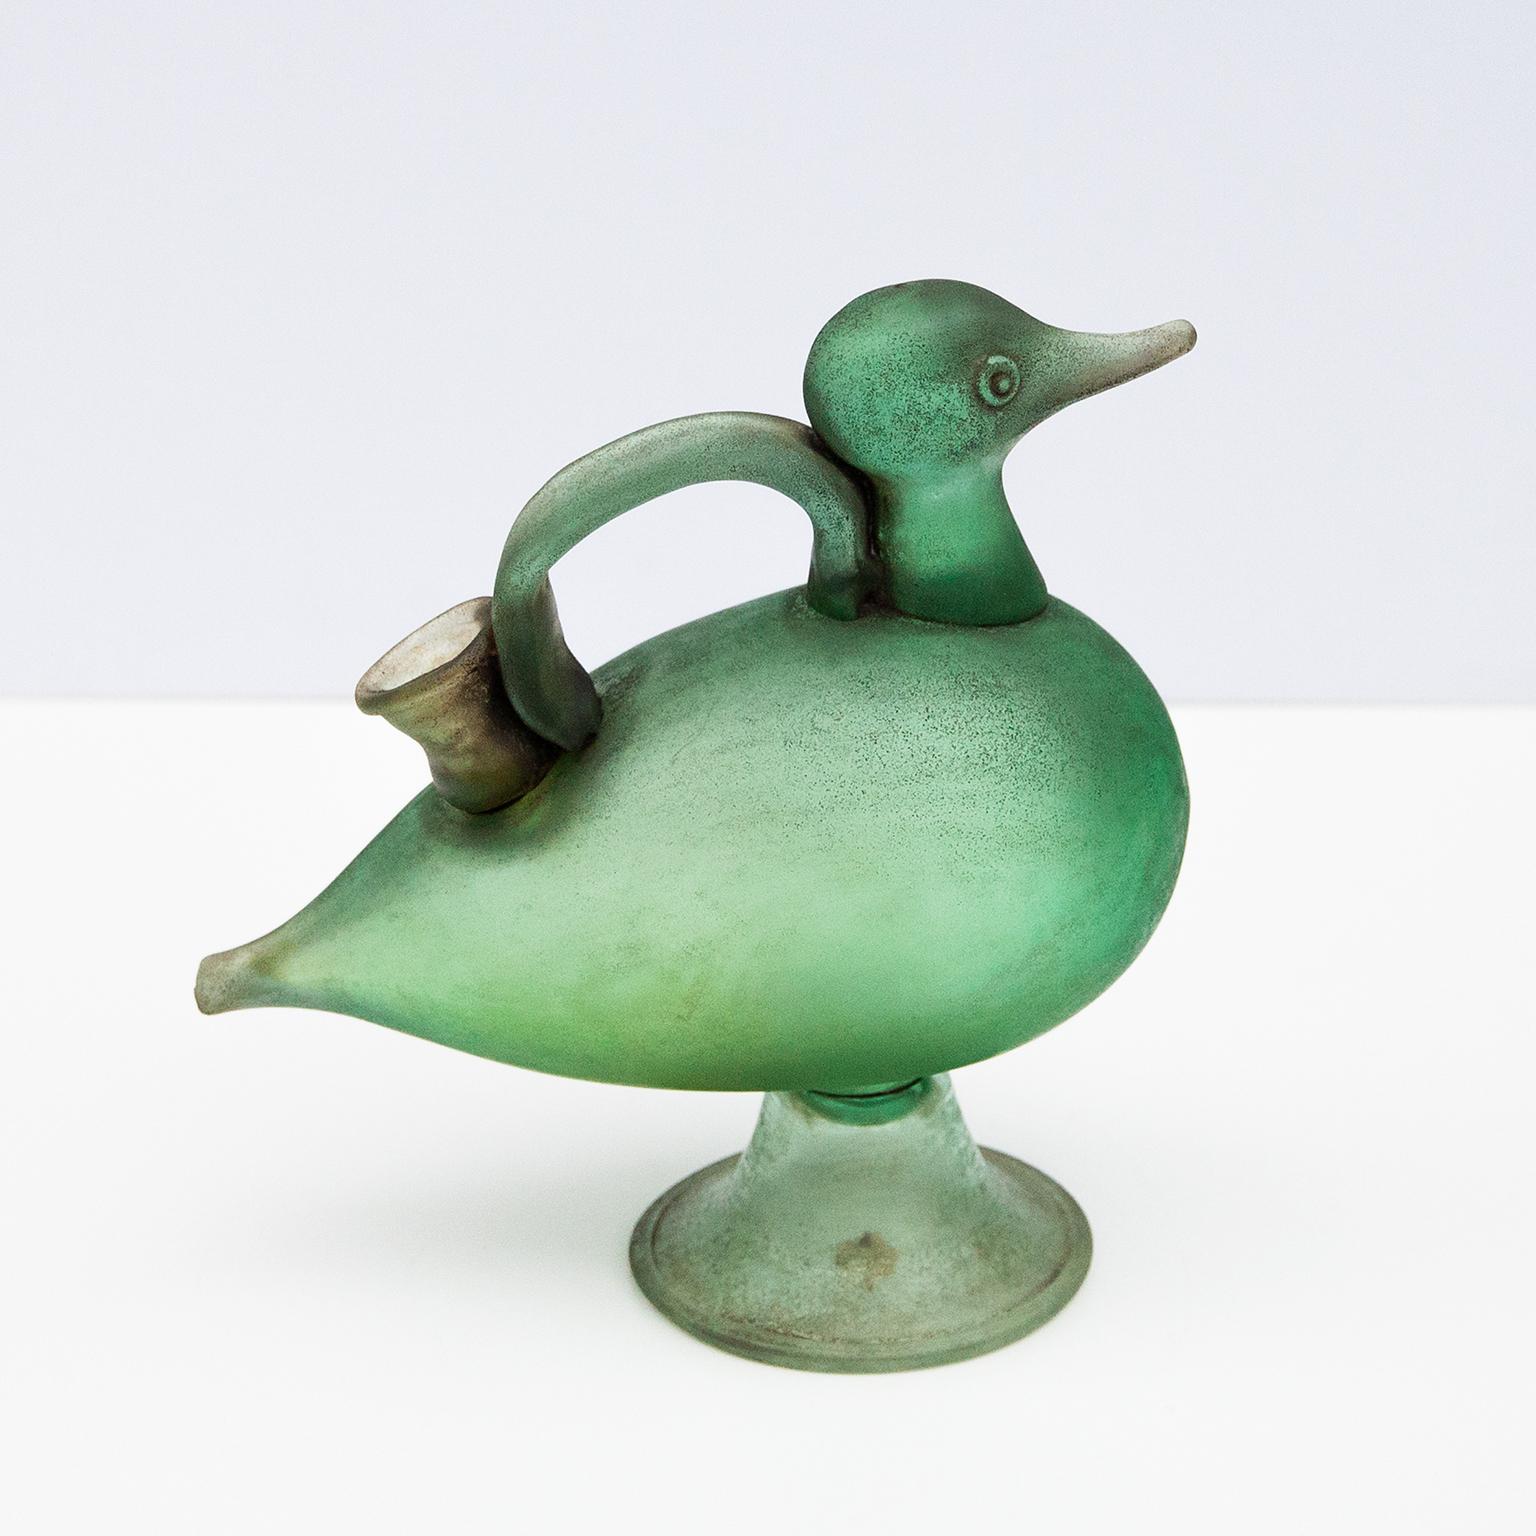 Bougeoir en forme de canard conçu par Flavio Poli dans les années 1950.
Autocollant en papier Seguso inclus.